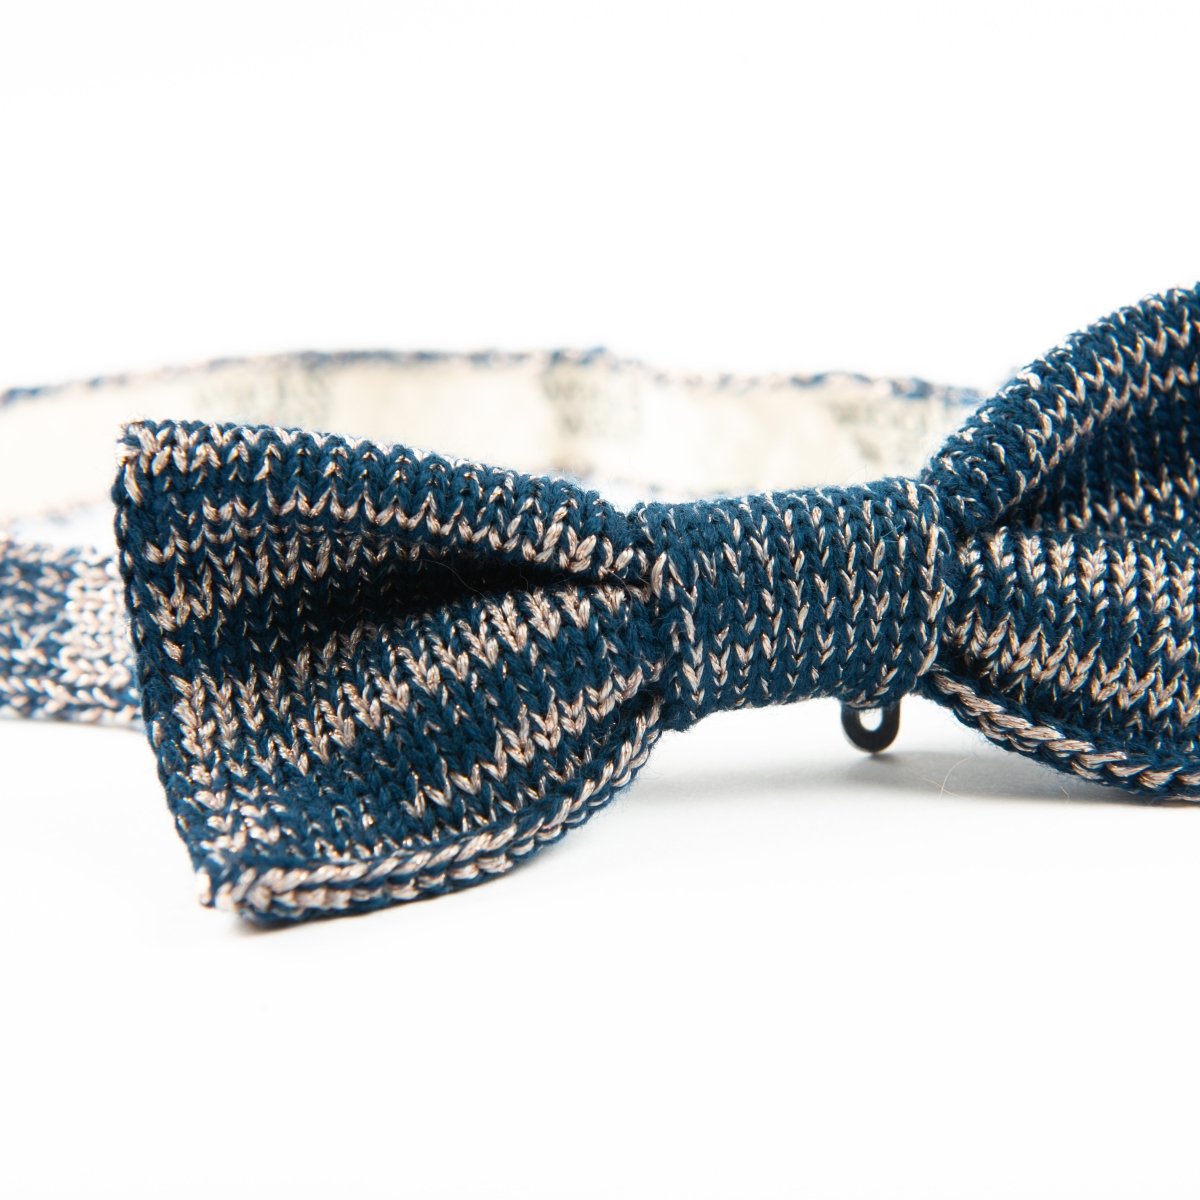 SALE: Gatsby Bow Tie - Wool & Water